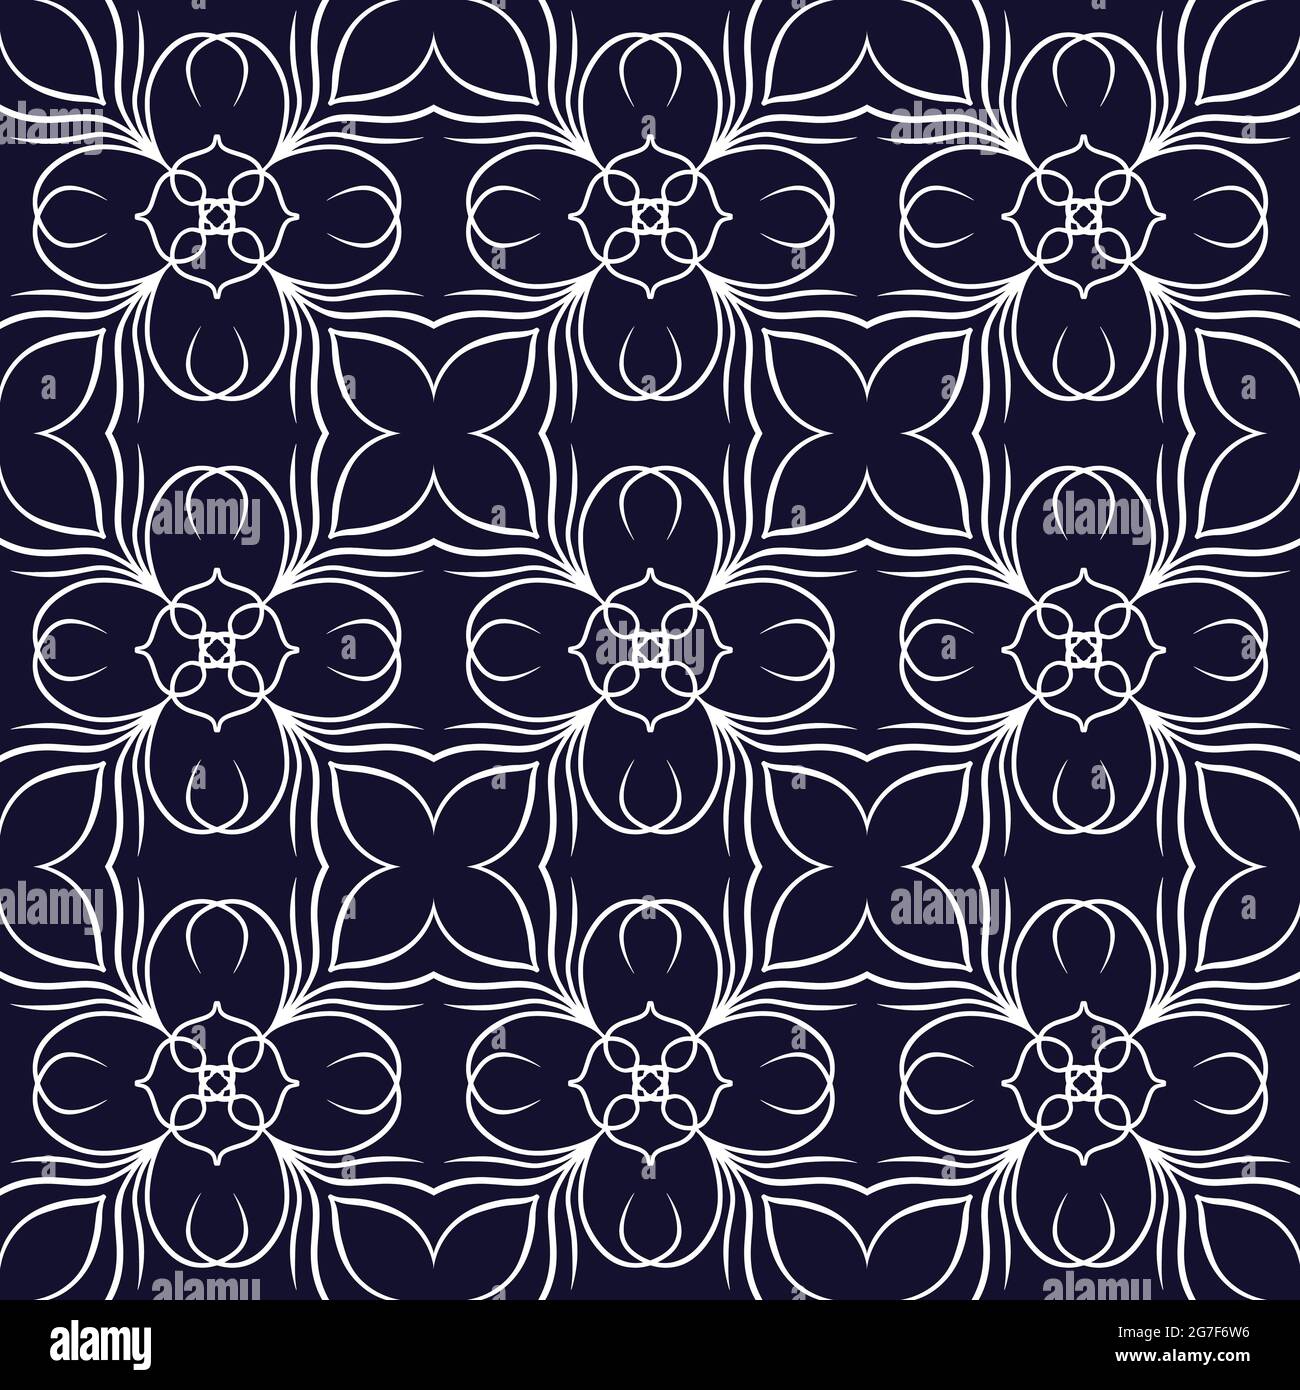 Illustration eines hellen ornamentalen wiederholten Musters auf dunkelblauem Hintergrund Stockfoto